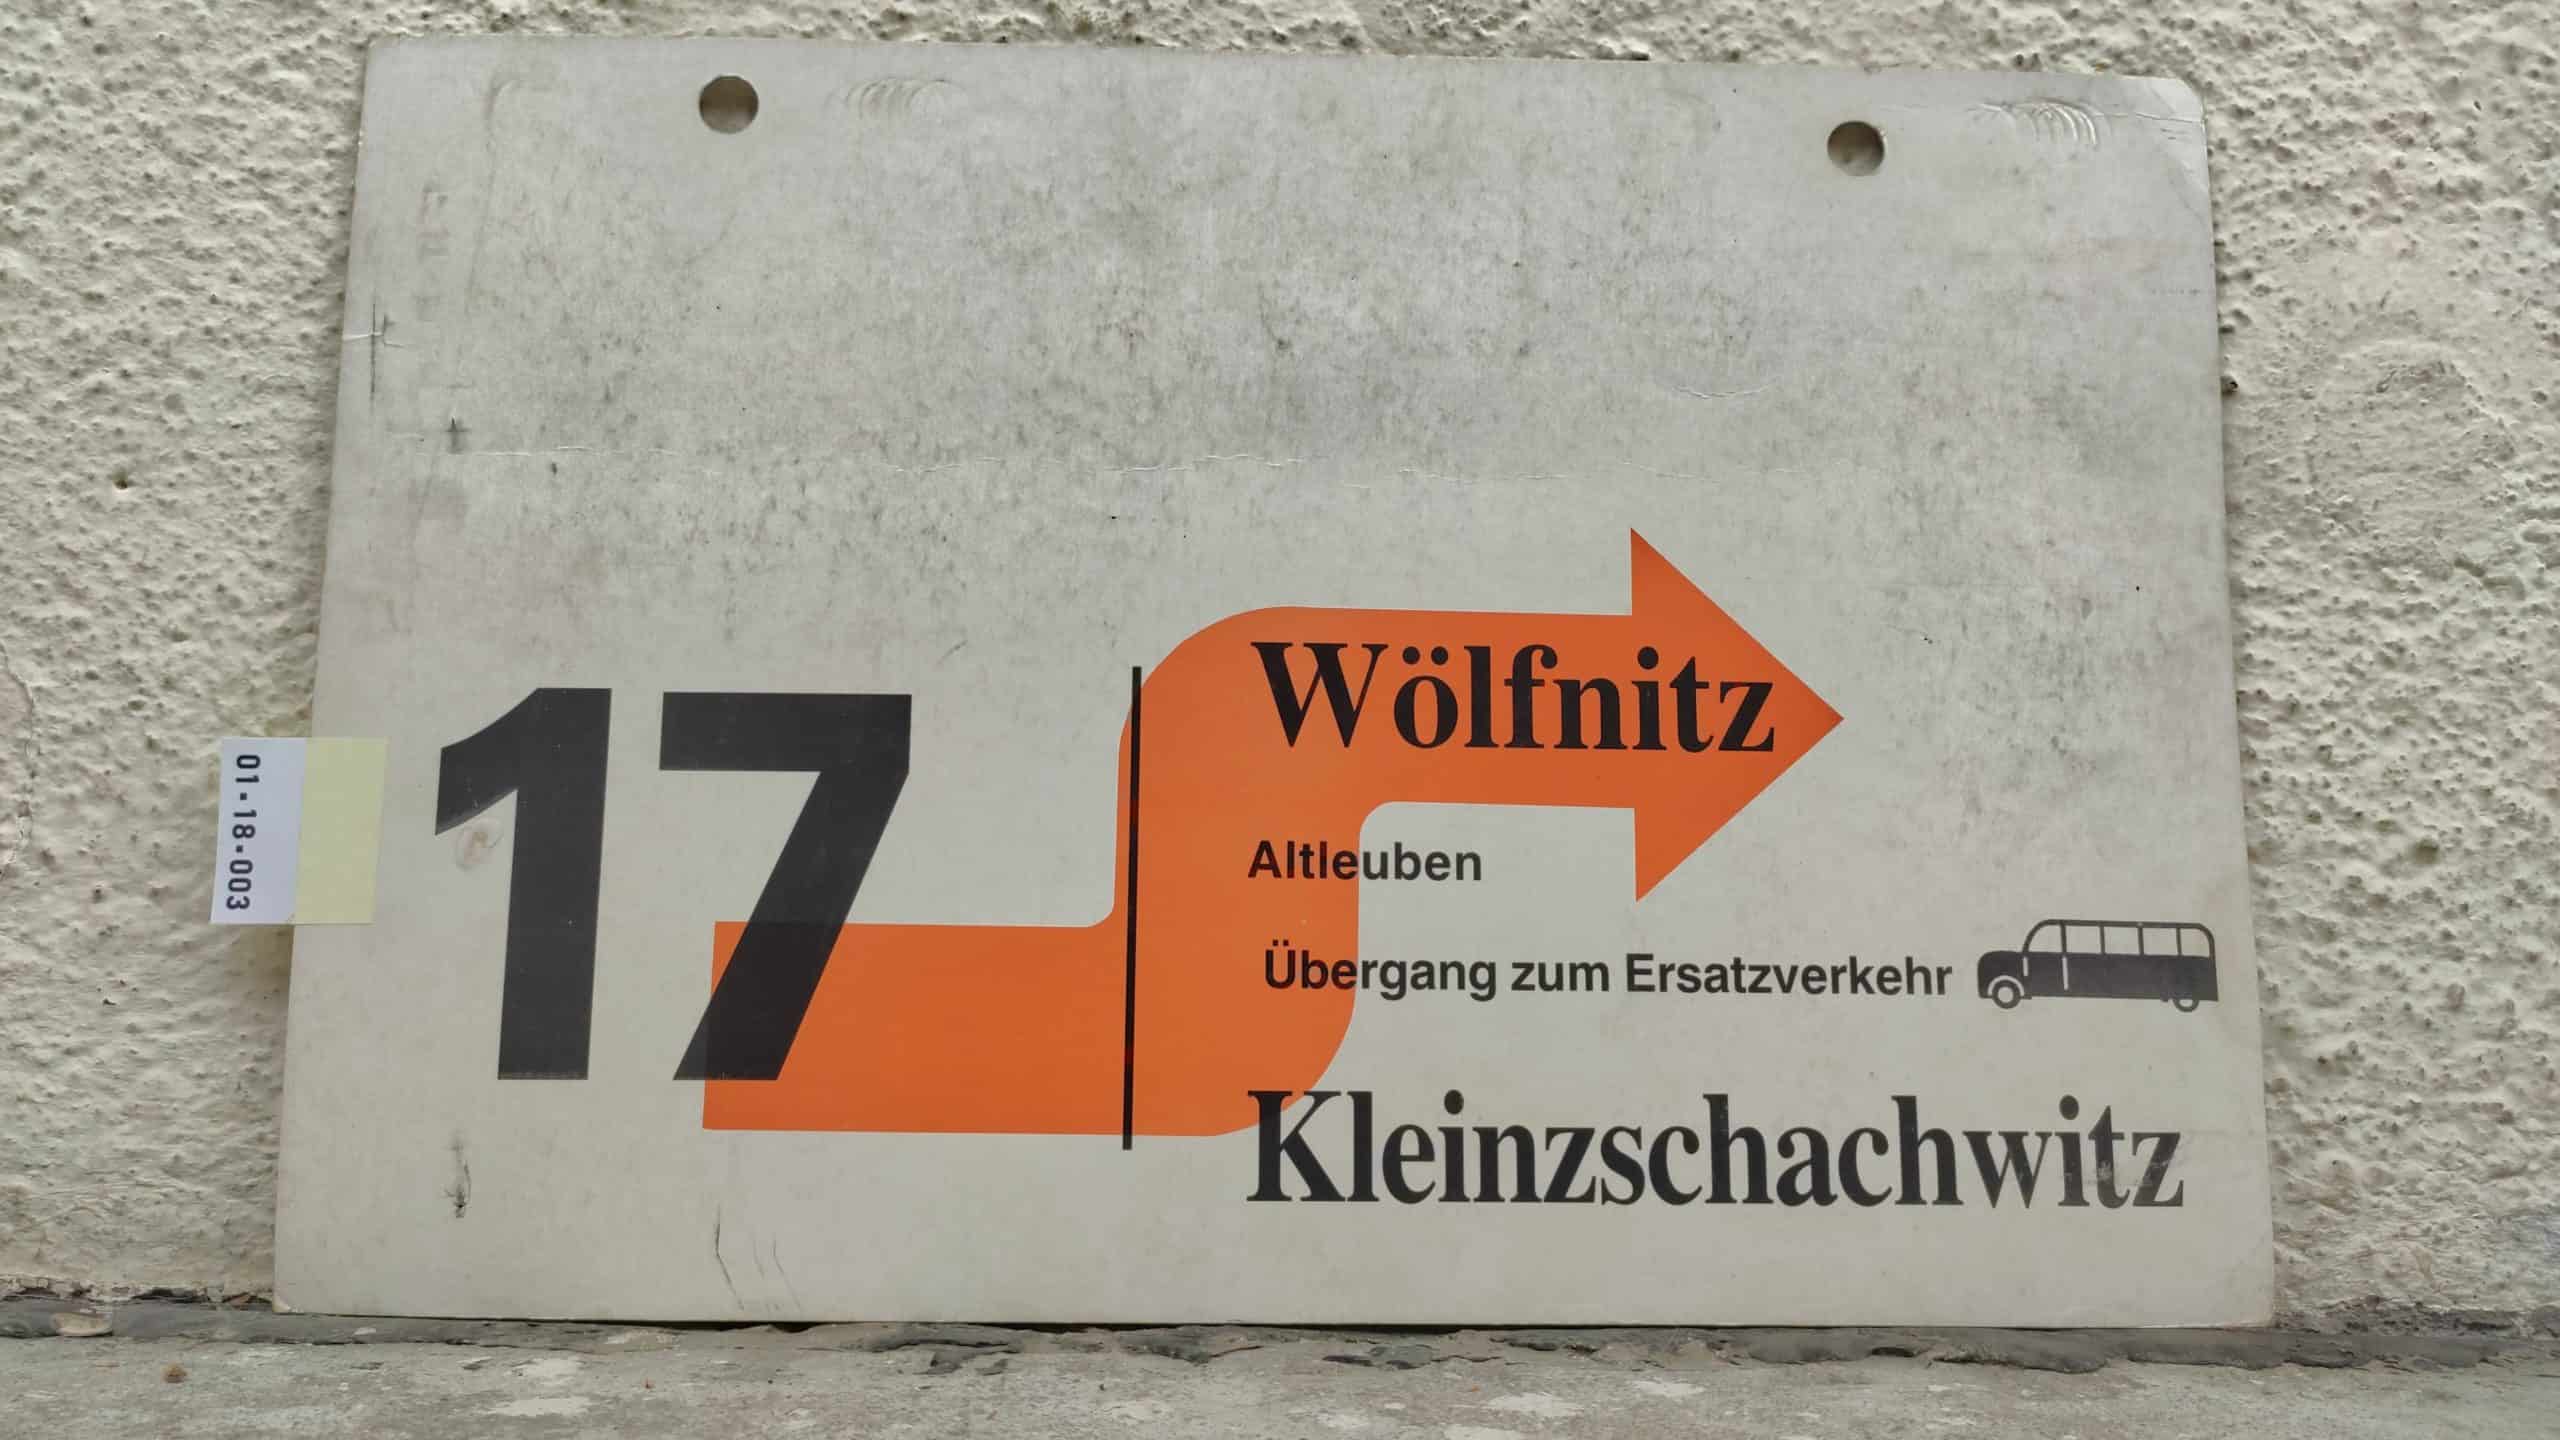 17 Wölfnitz – Kleinzschachwitz